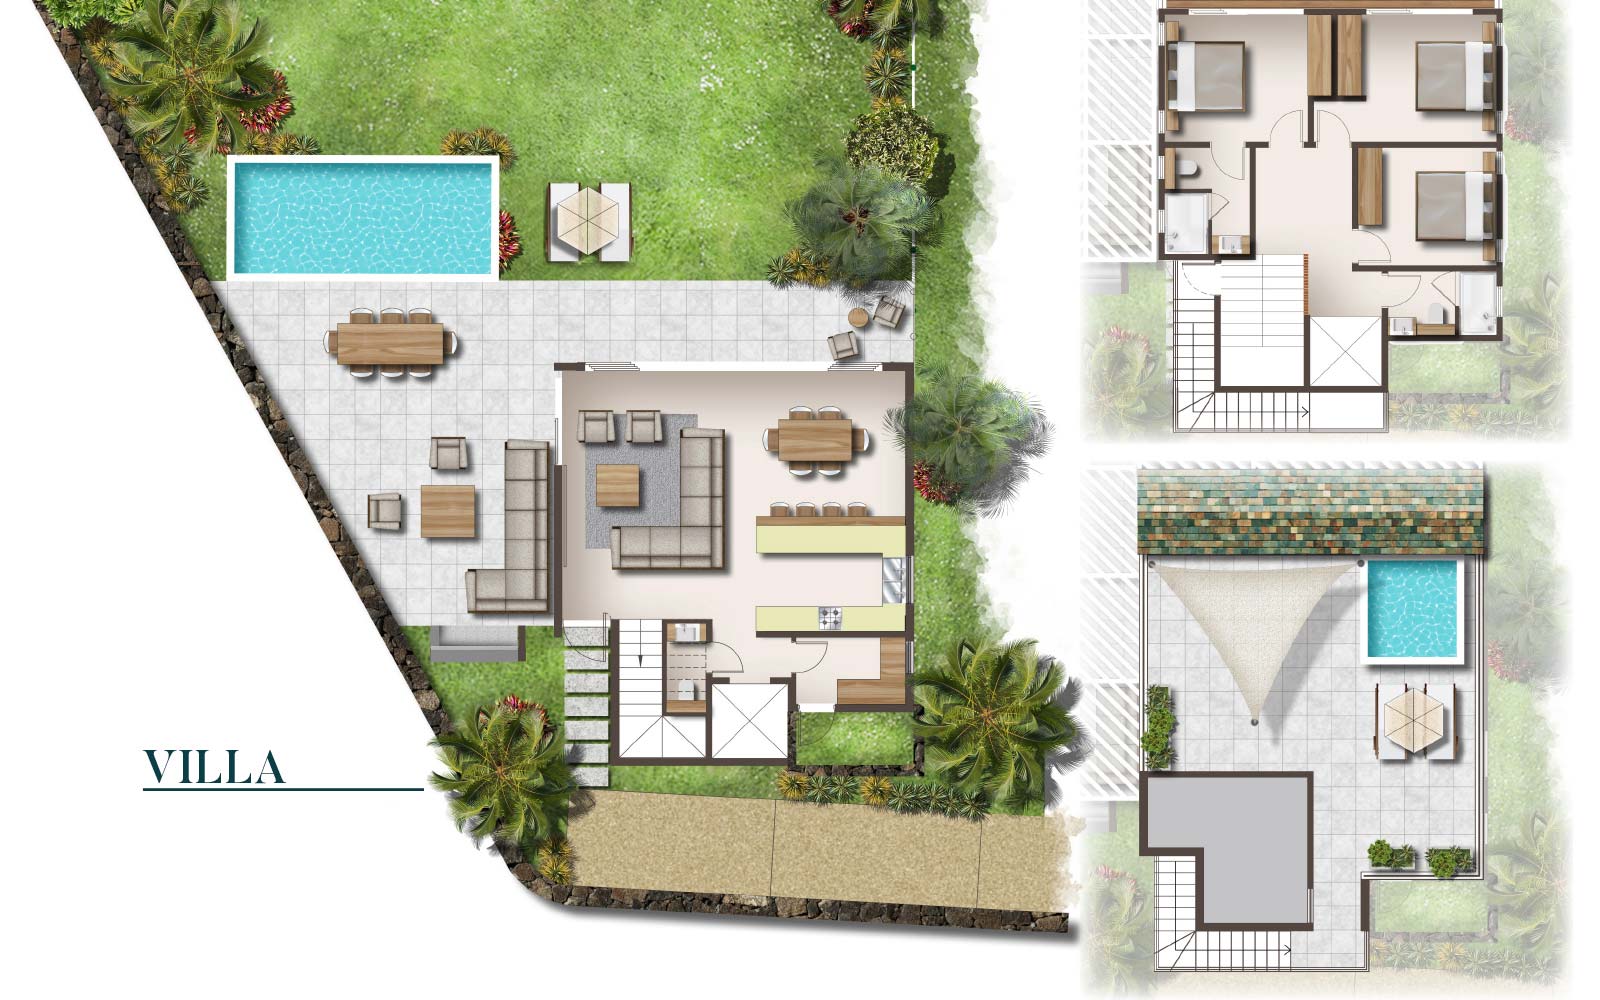 Casa-Alegria-Villa-Floor-Plan-April-23-2020